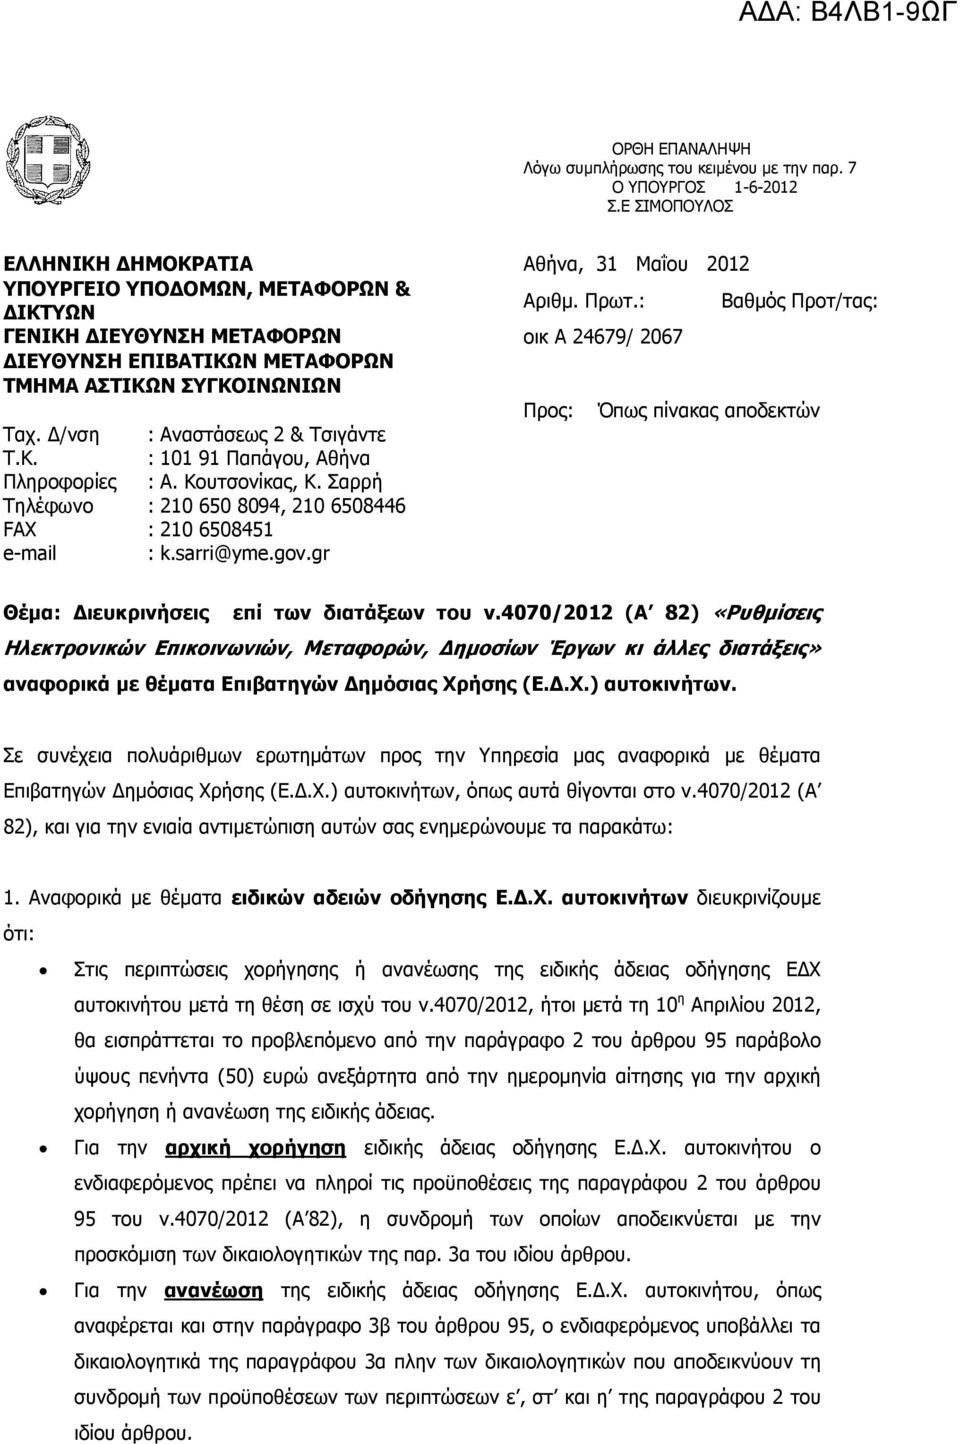 Κουτσονίκας, Κ. Σαρρή Τηλέφωνο : 210 650 8094, 210 6508446 FAX : 210 6508451 e-mail : k.sarri@yme.gov.gr Θέµα: ιευκρινήσεις επί των διατάξεων του ν.